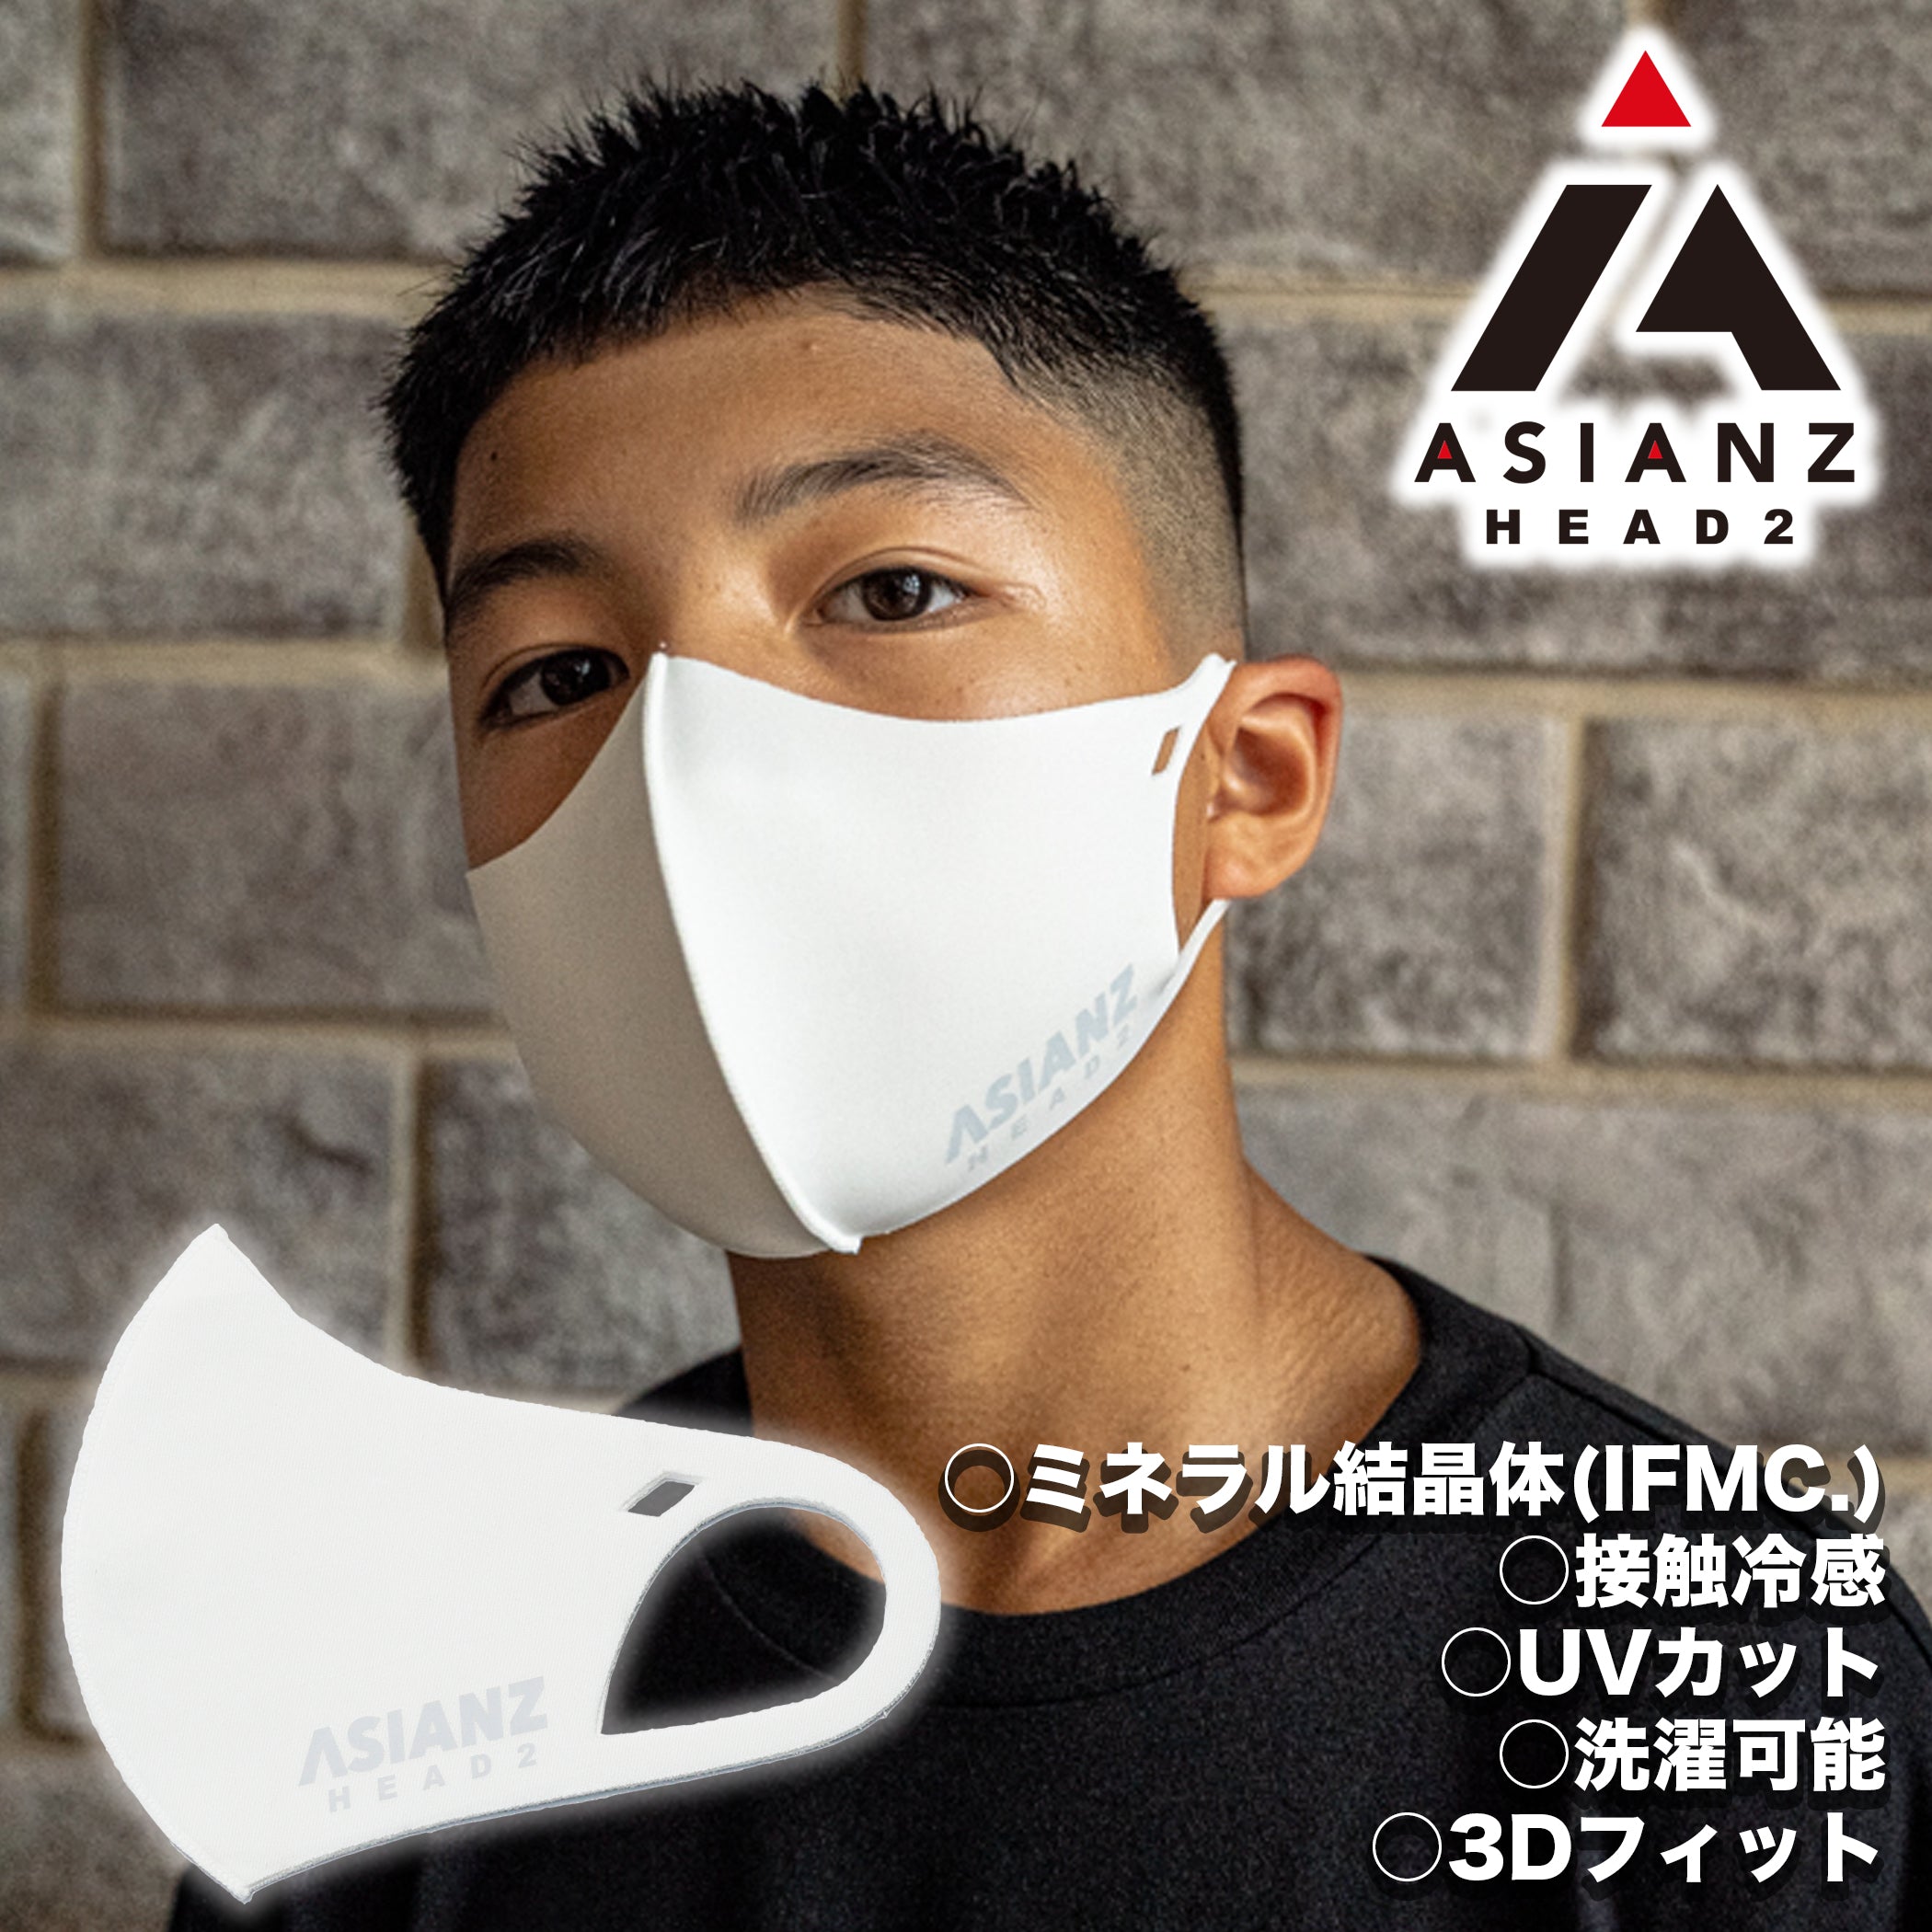 ミネラル マスク ASIANZ HEAD2 ロゴ ホワイト (20062501)